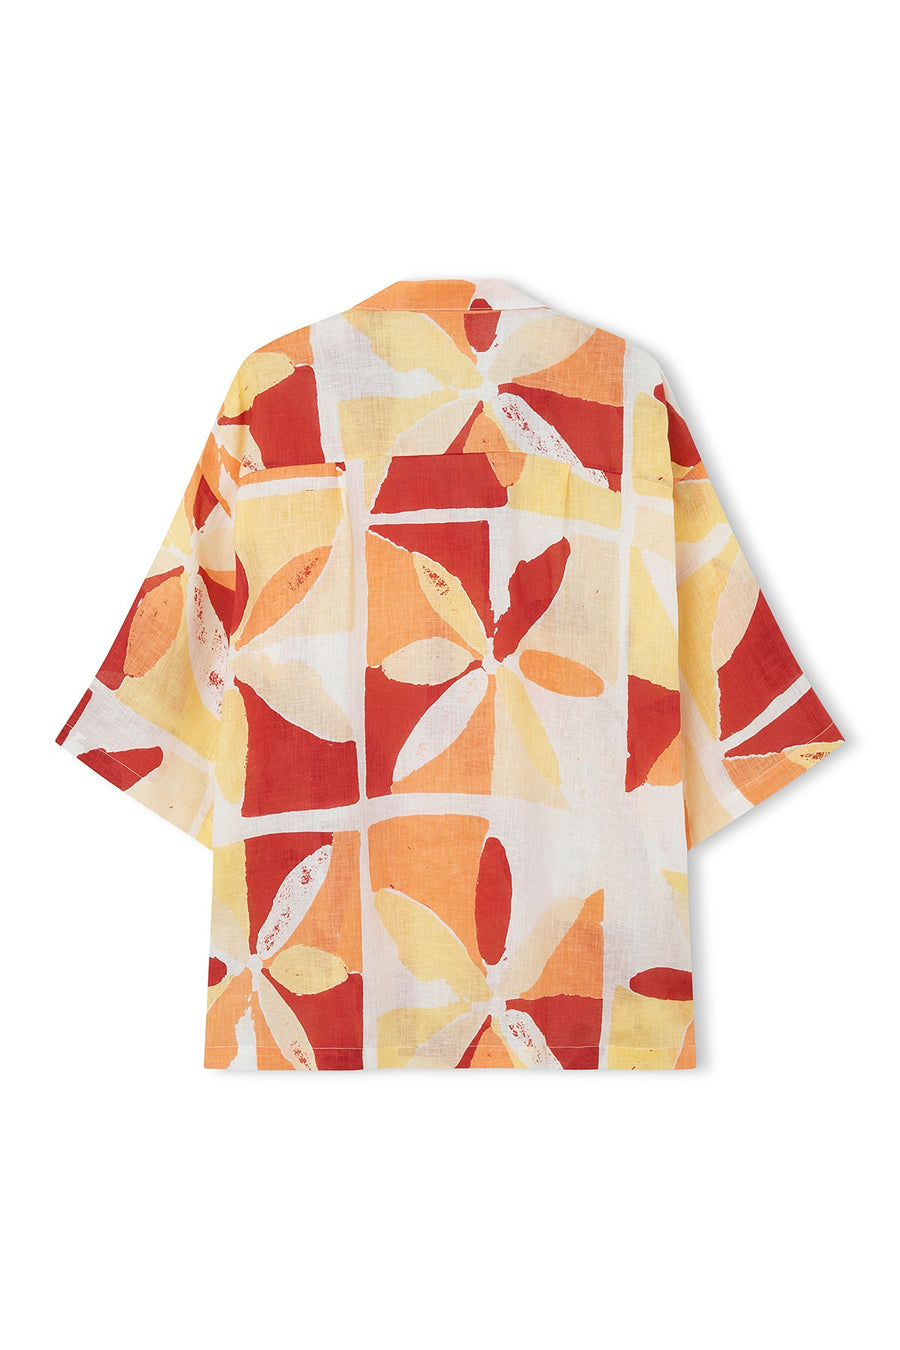 Zulu & Zephyr - Sunset Tile Linen Shirt t in Sunset Tile